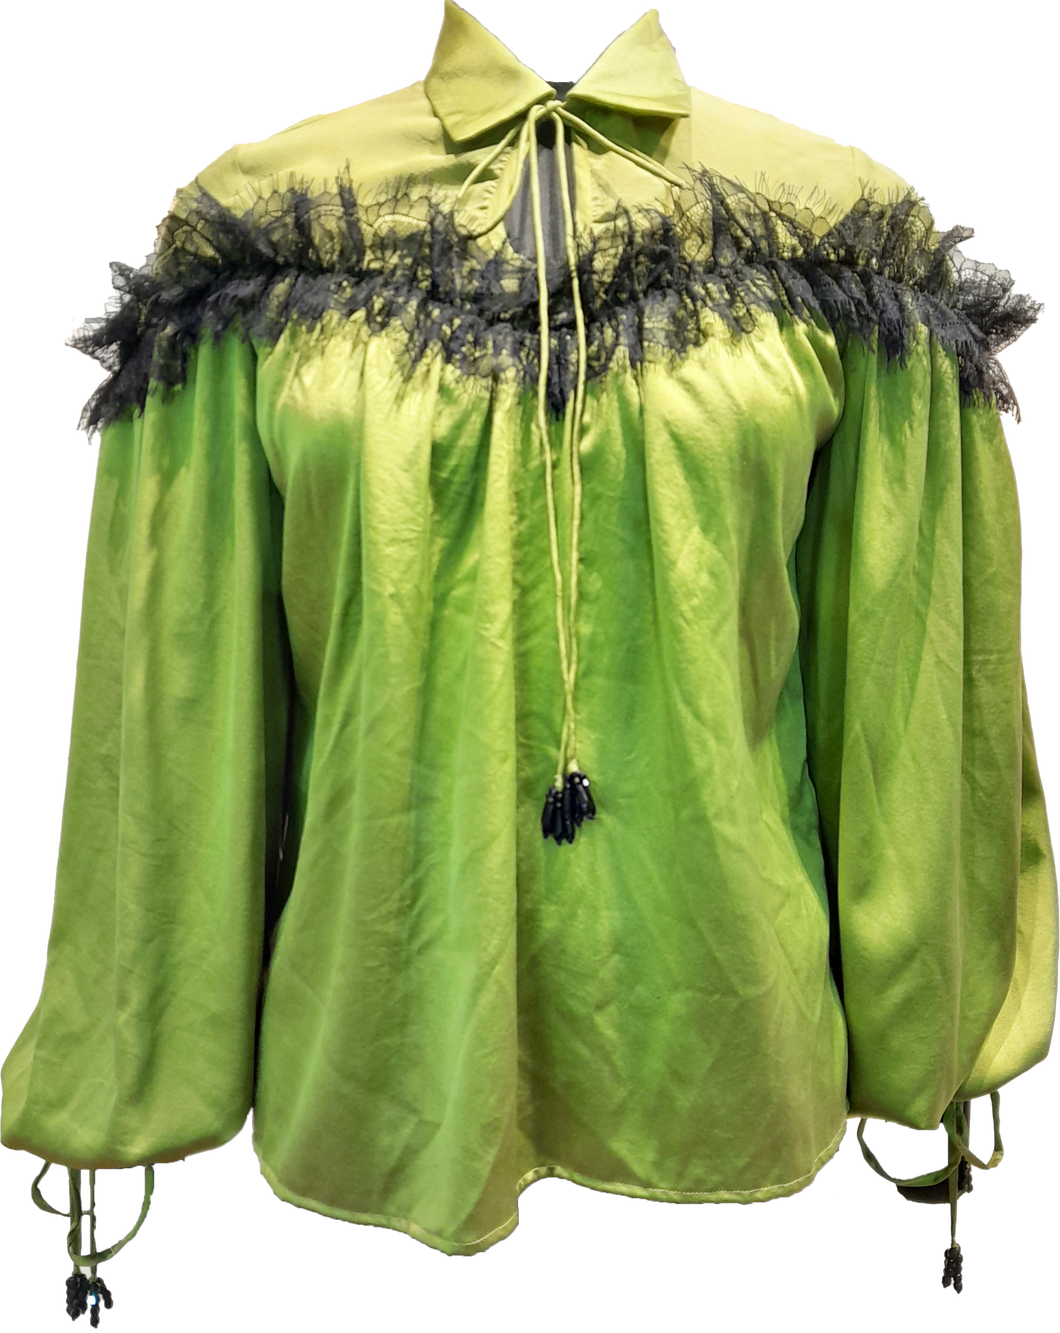 La Fuori green silk blouse